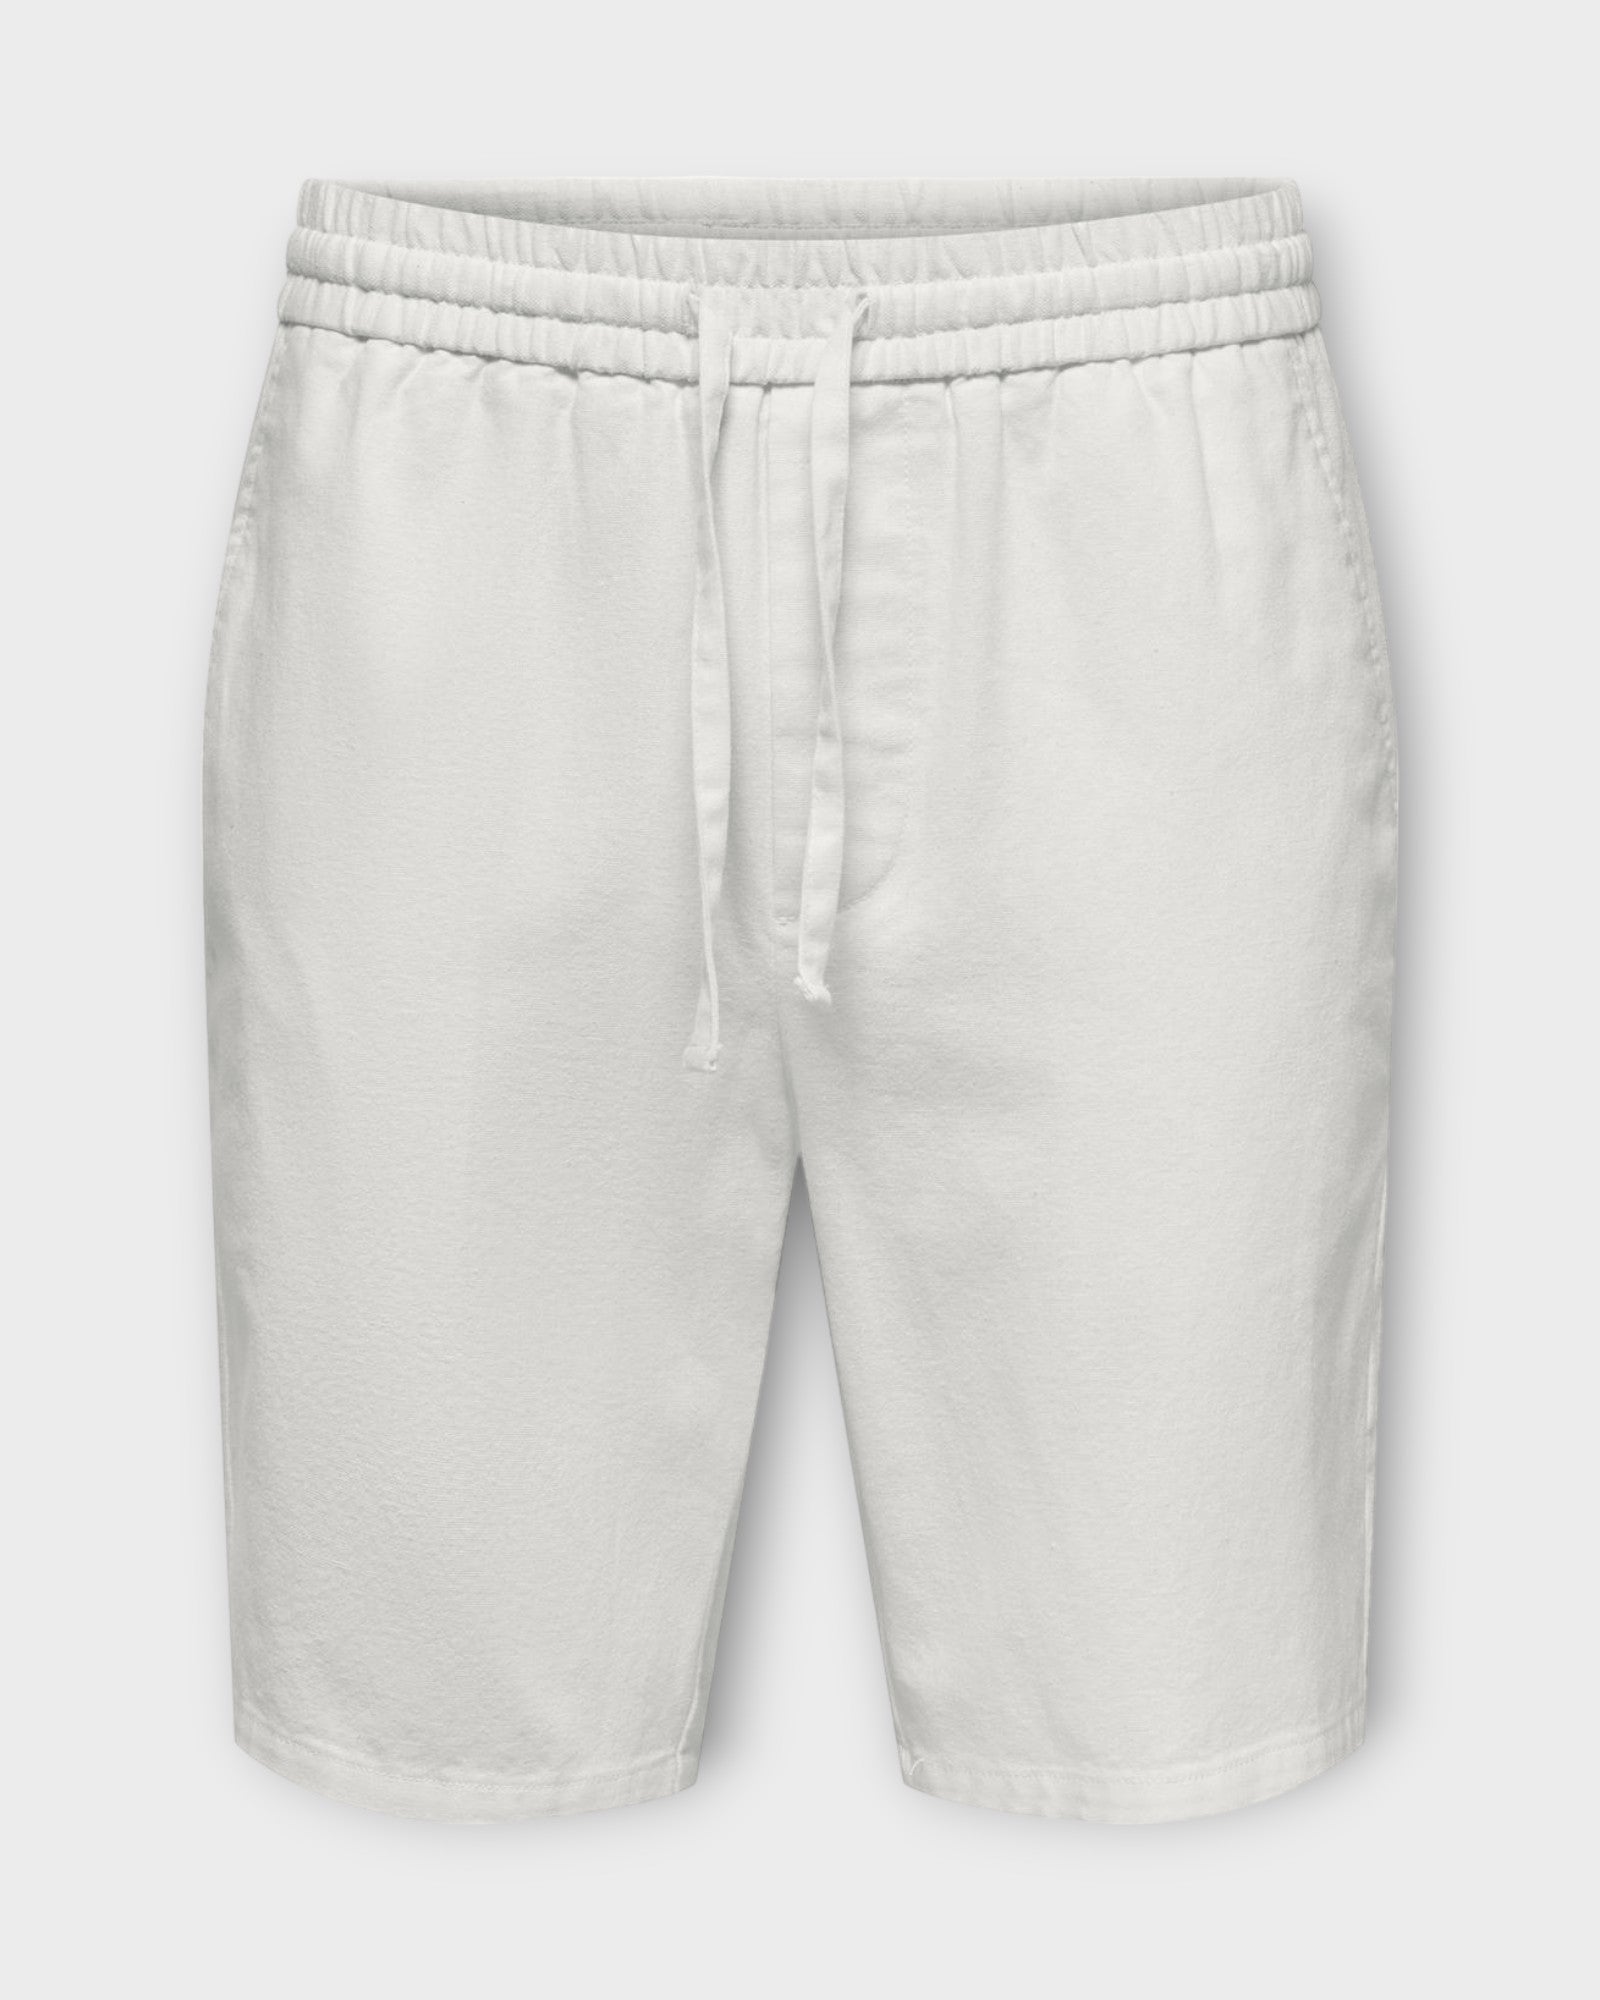 Linus 0007  Cot Lin Shorts Noos Bright White, Hvide hør shorts til mænd fra Jack and Jones. Her set forfra.